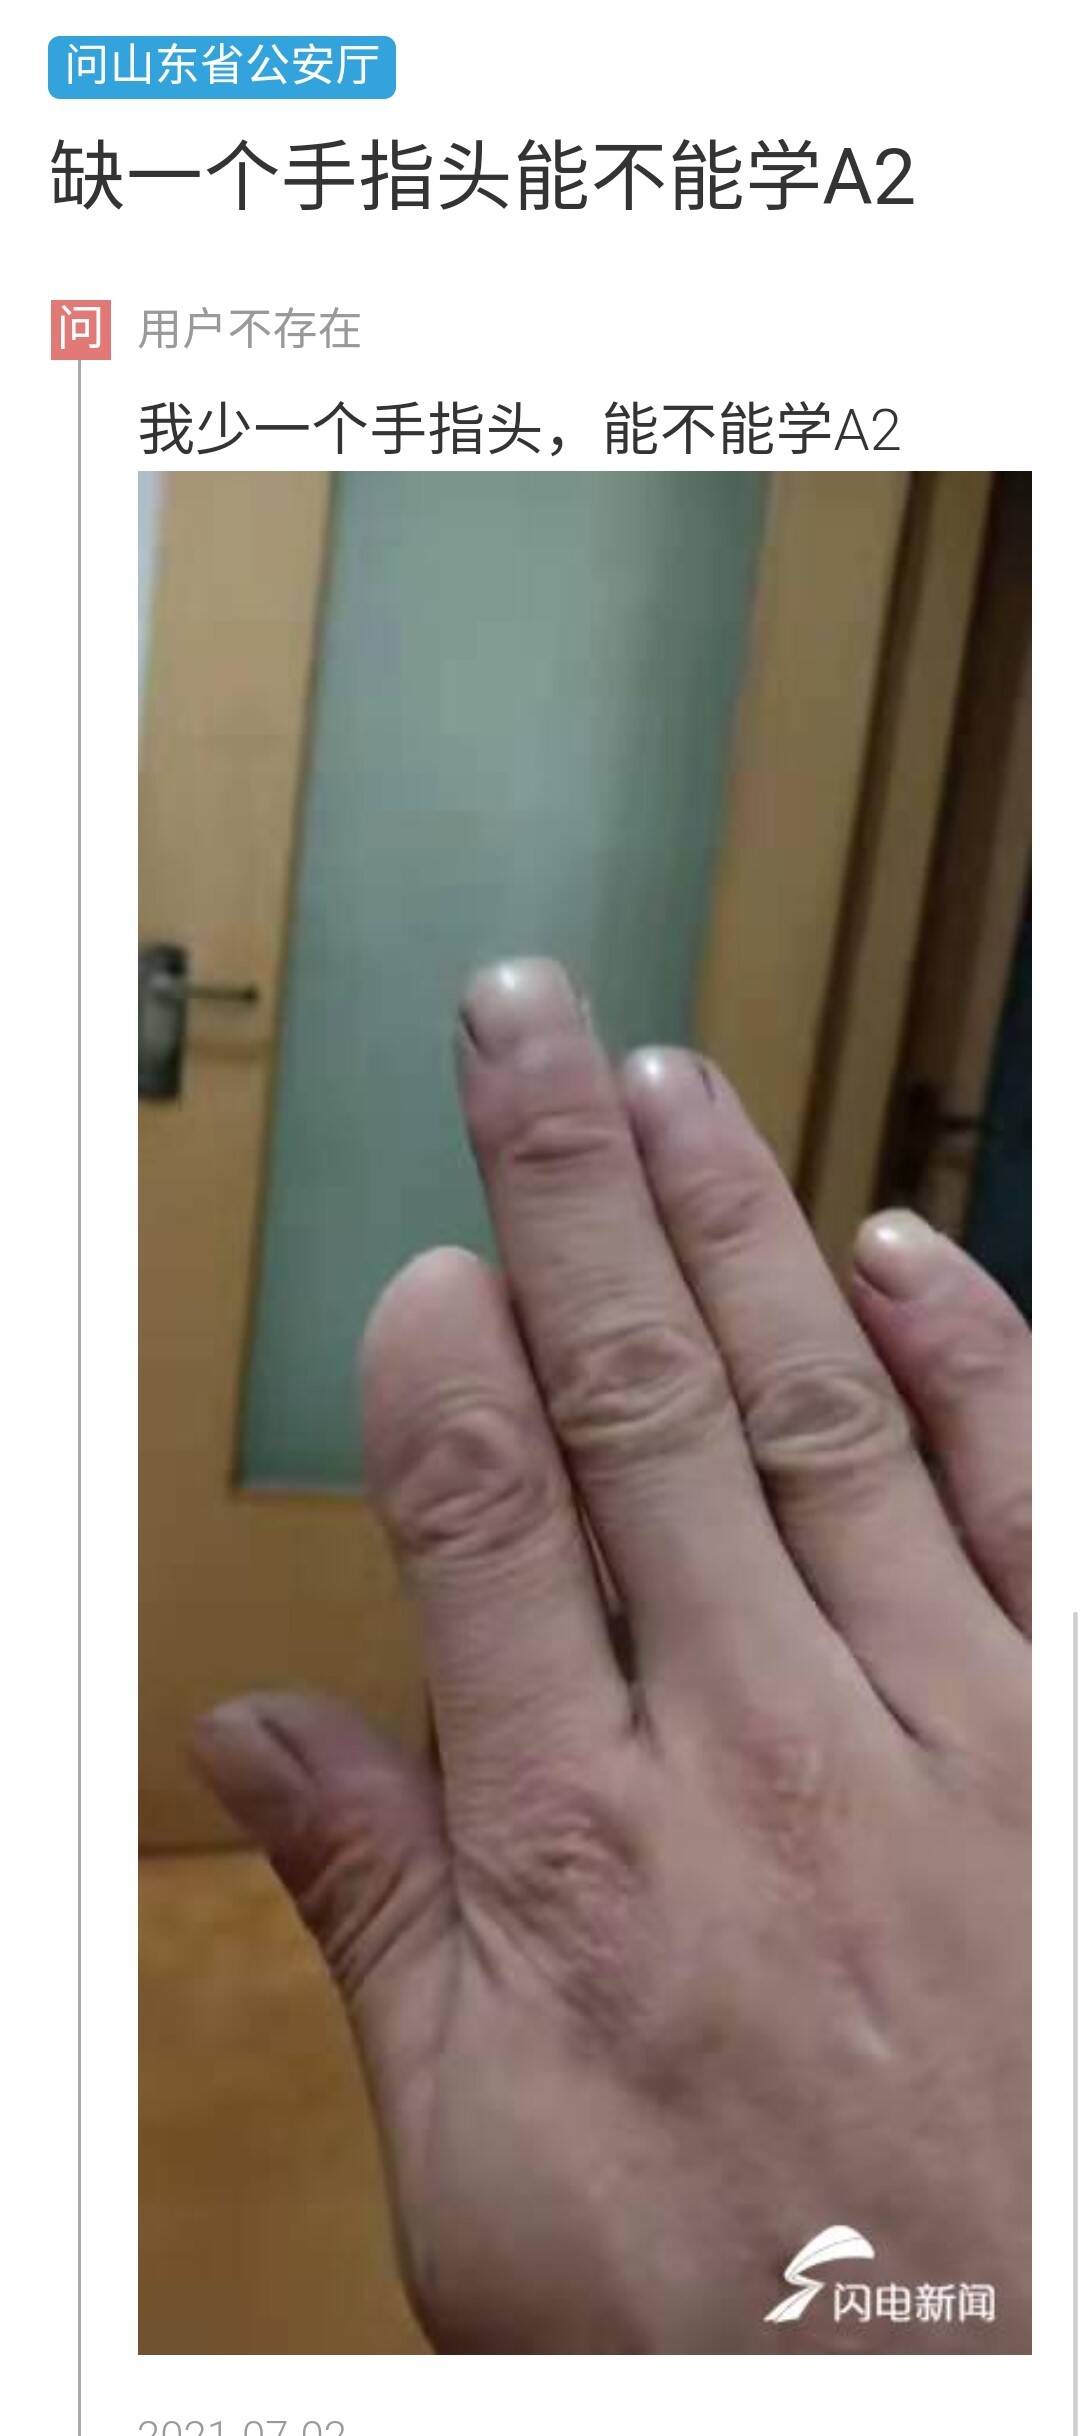 驾照左手手指残缺标准图片